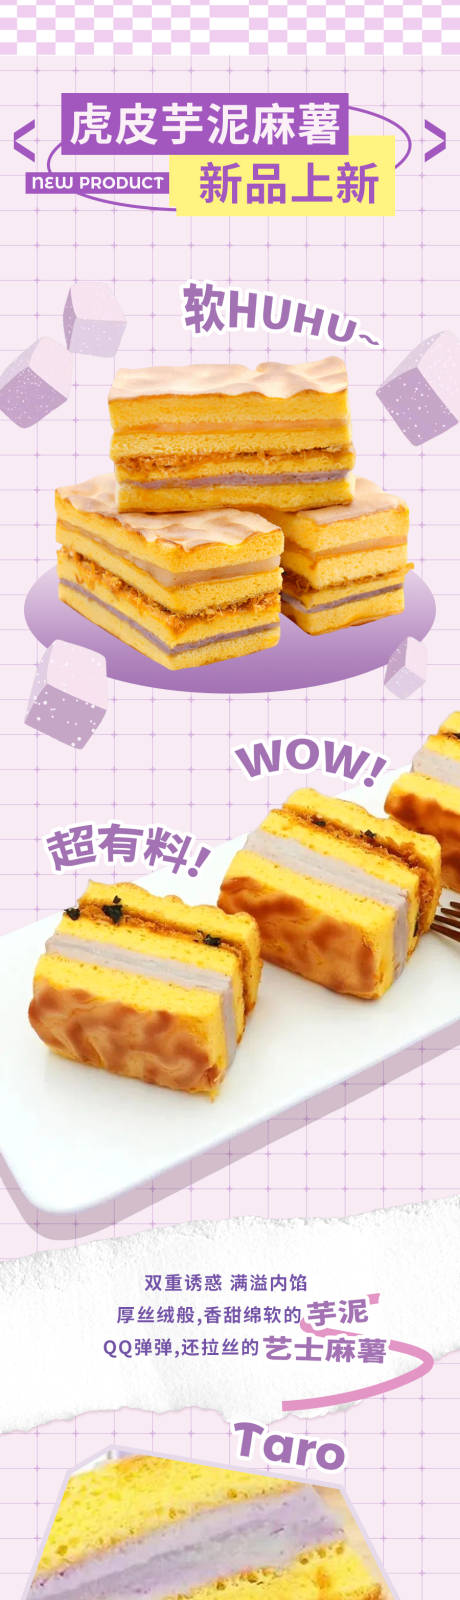 芋泥麻薯虎皮卷甜点餐饮营销推文长图